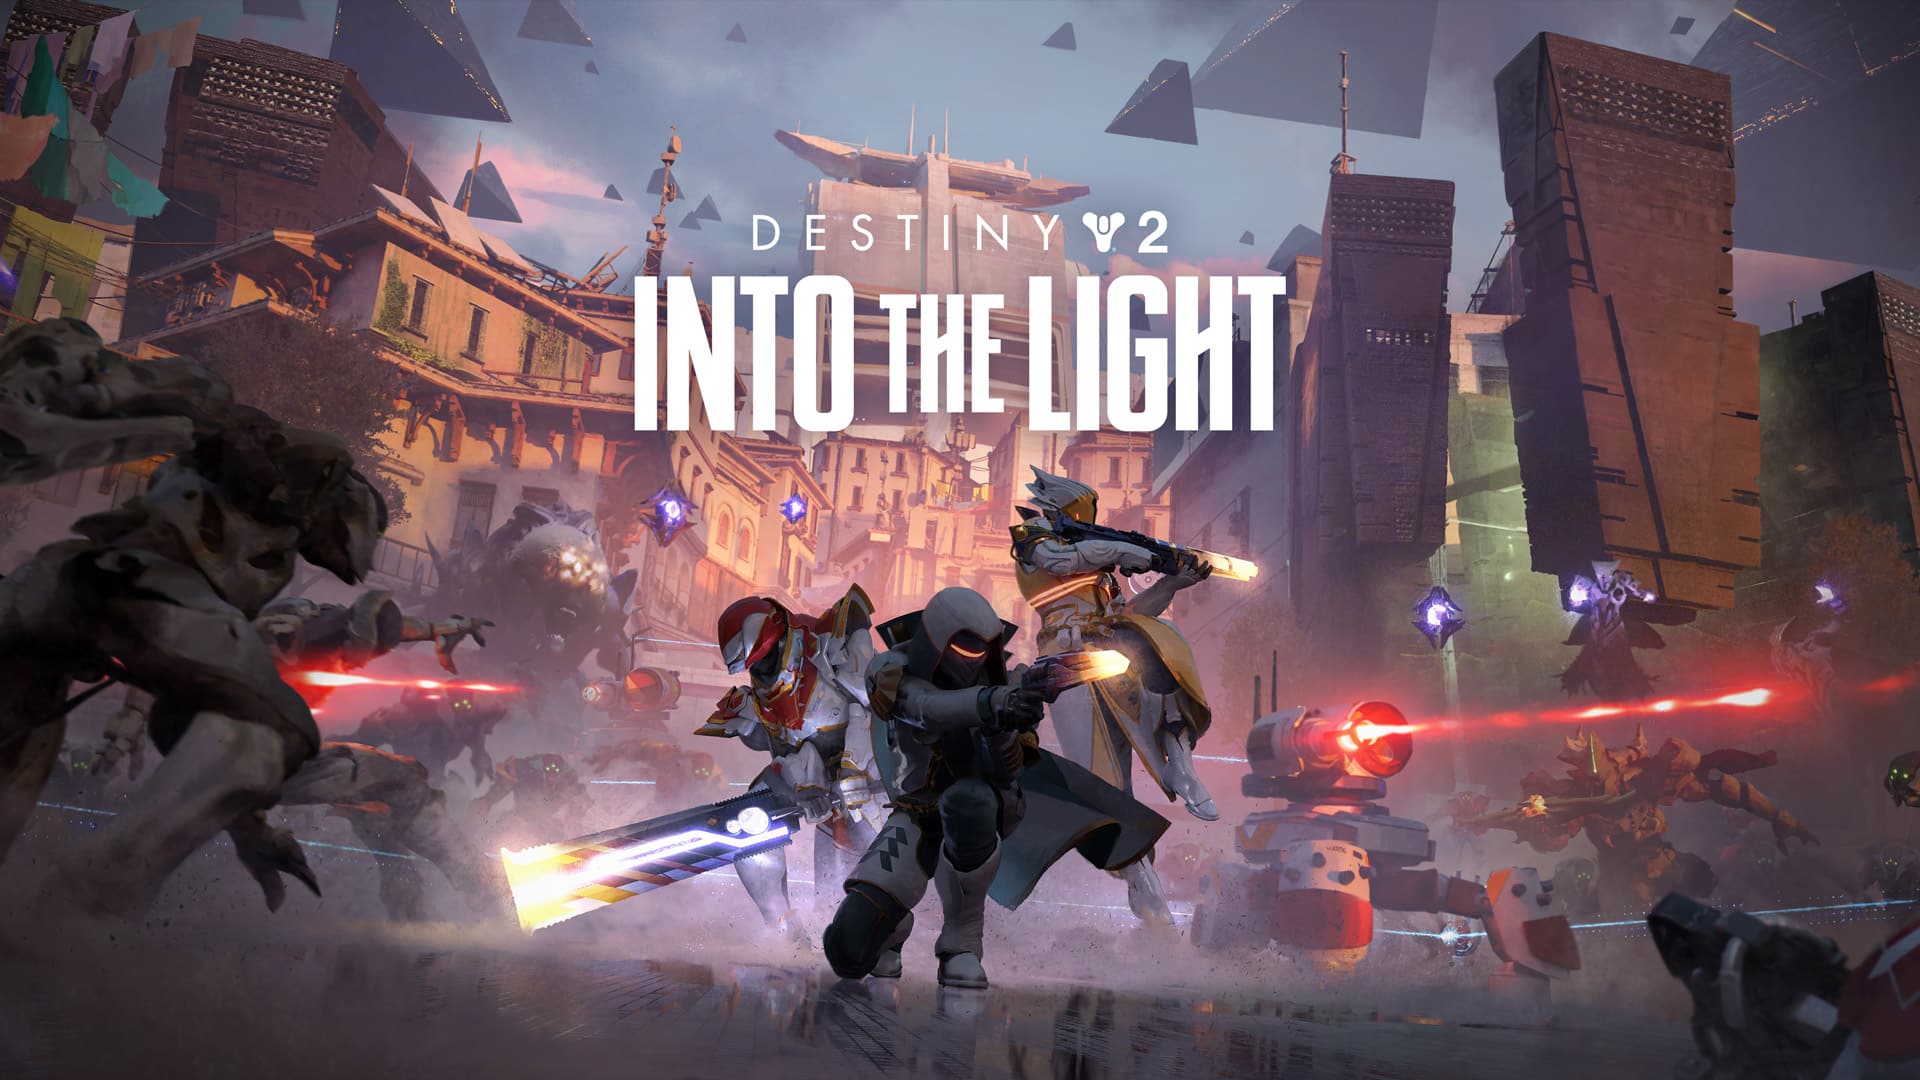 Destiny 2 "Into the Light"